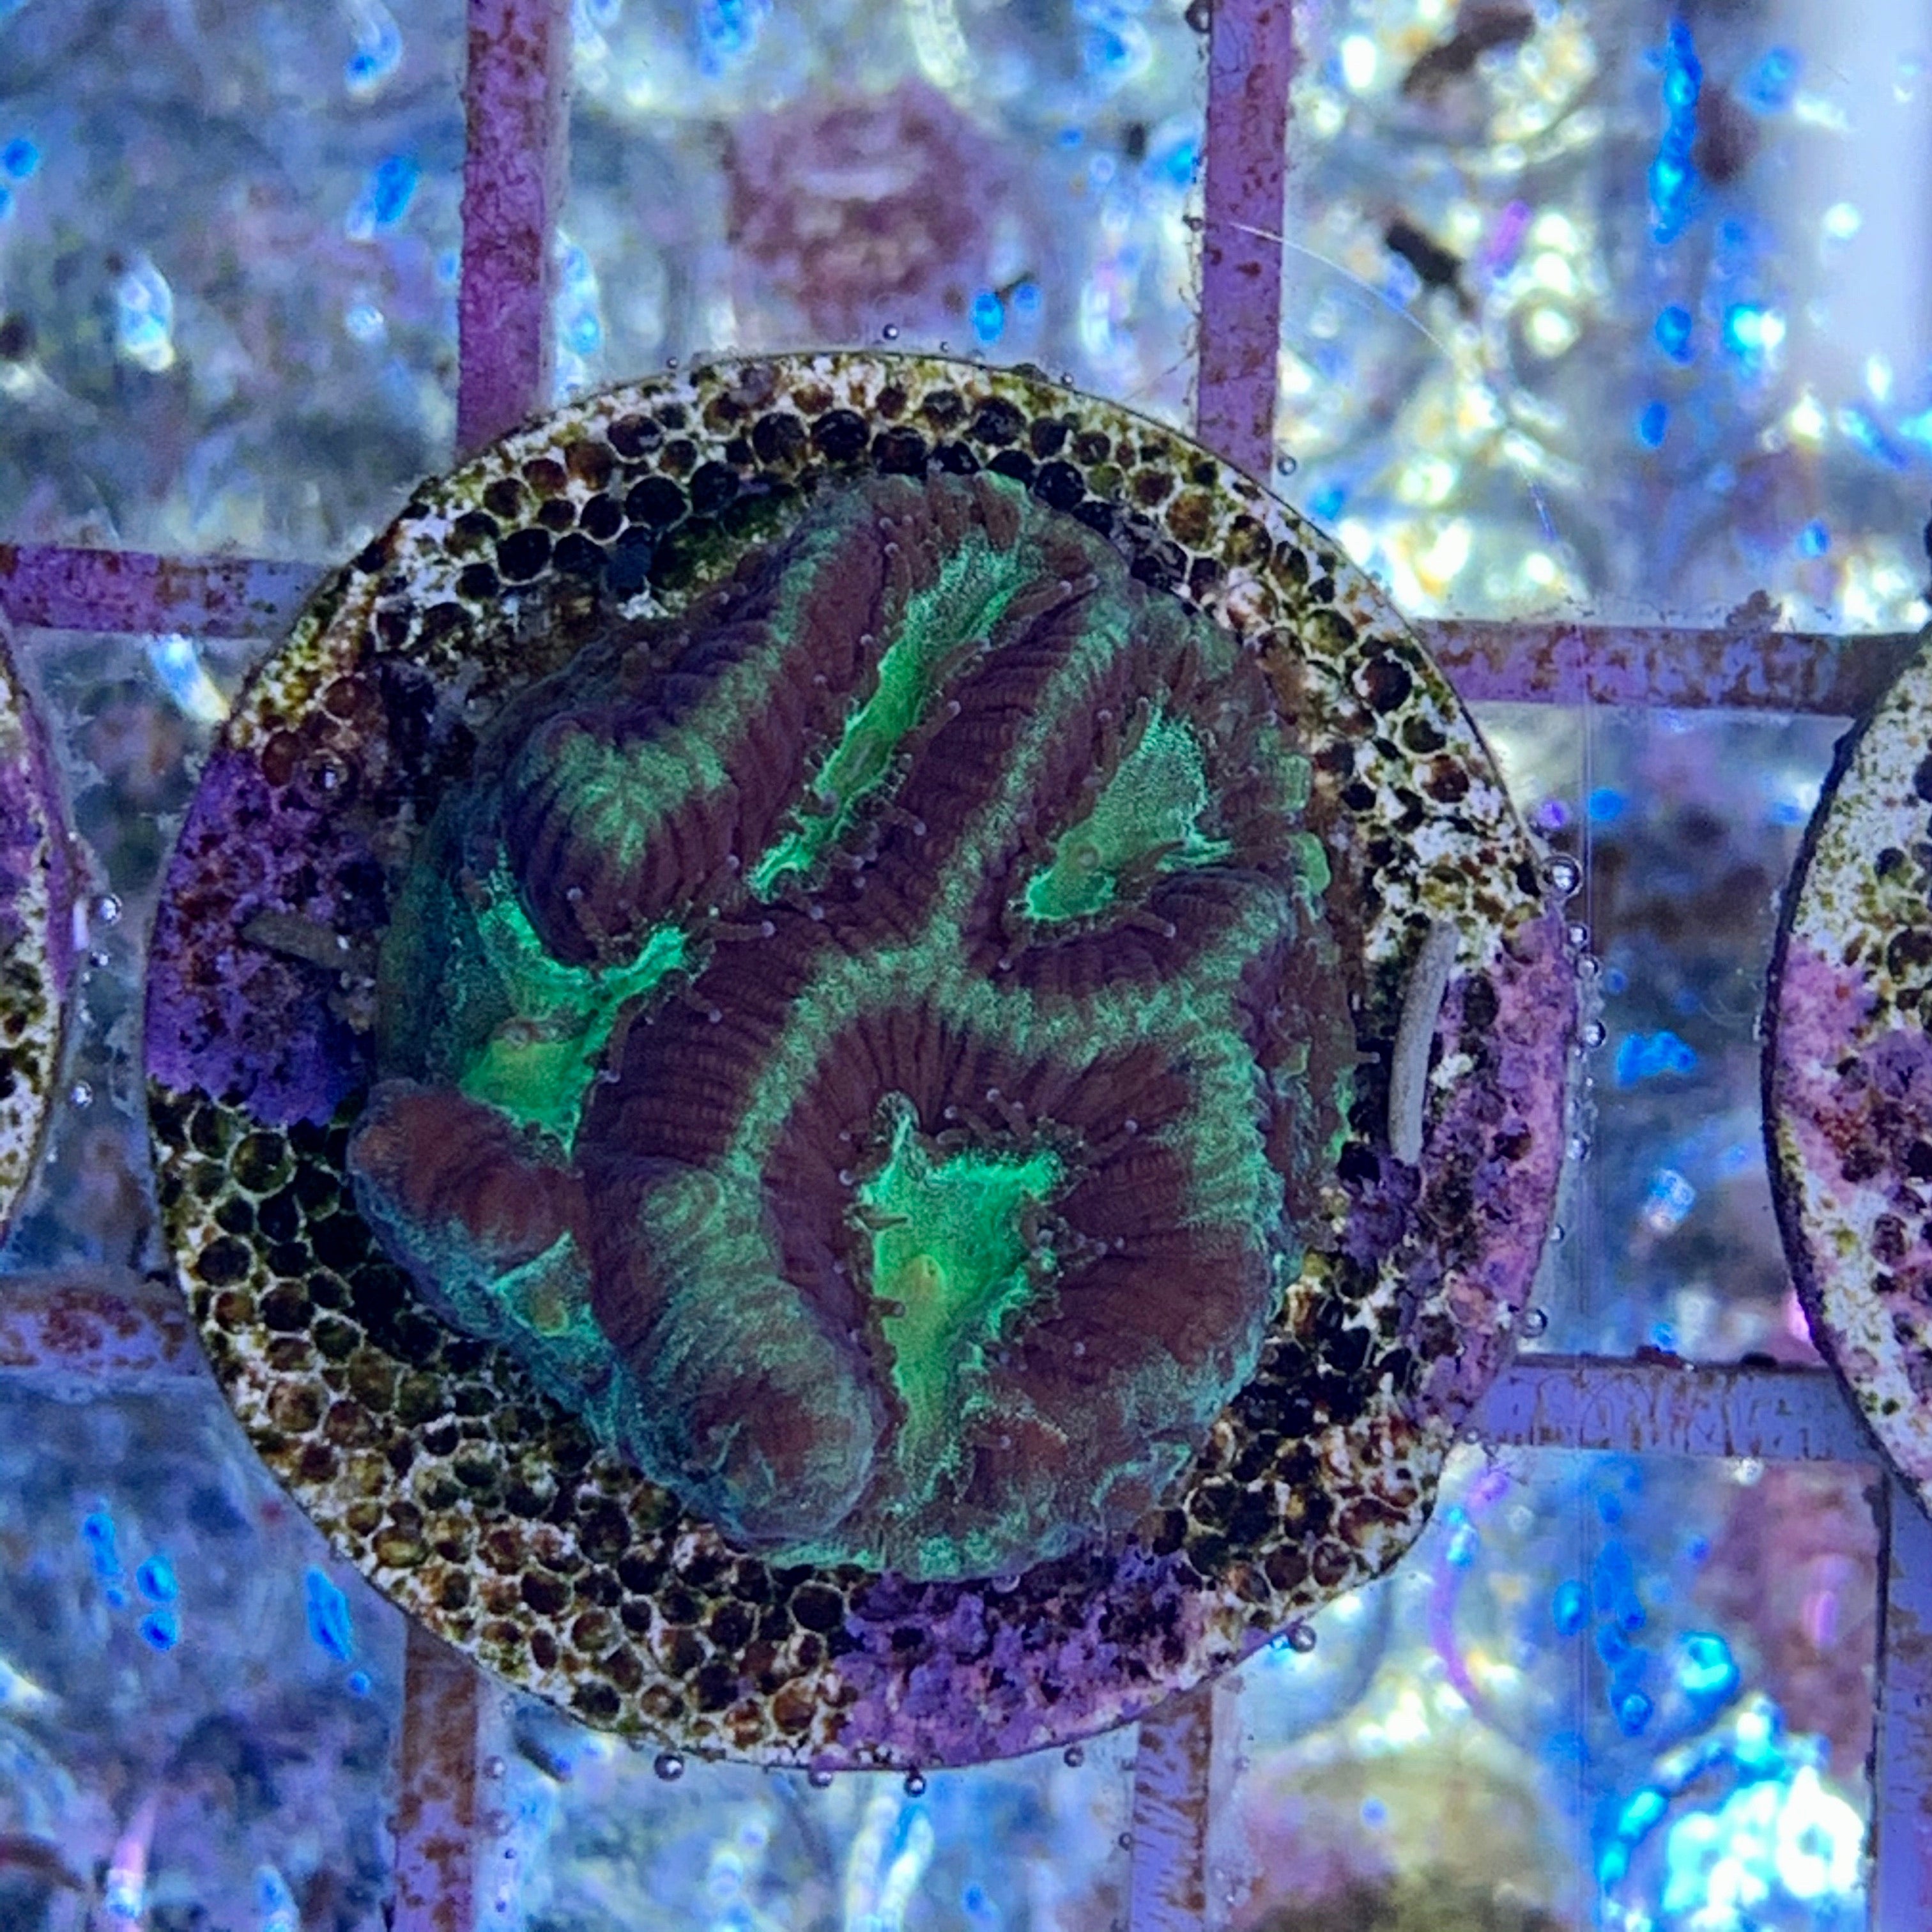 Toxic Green Platygyra Coral